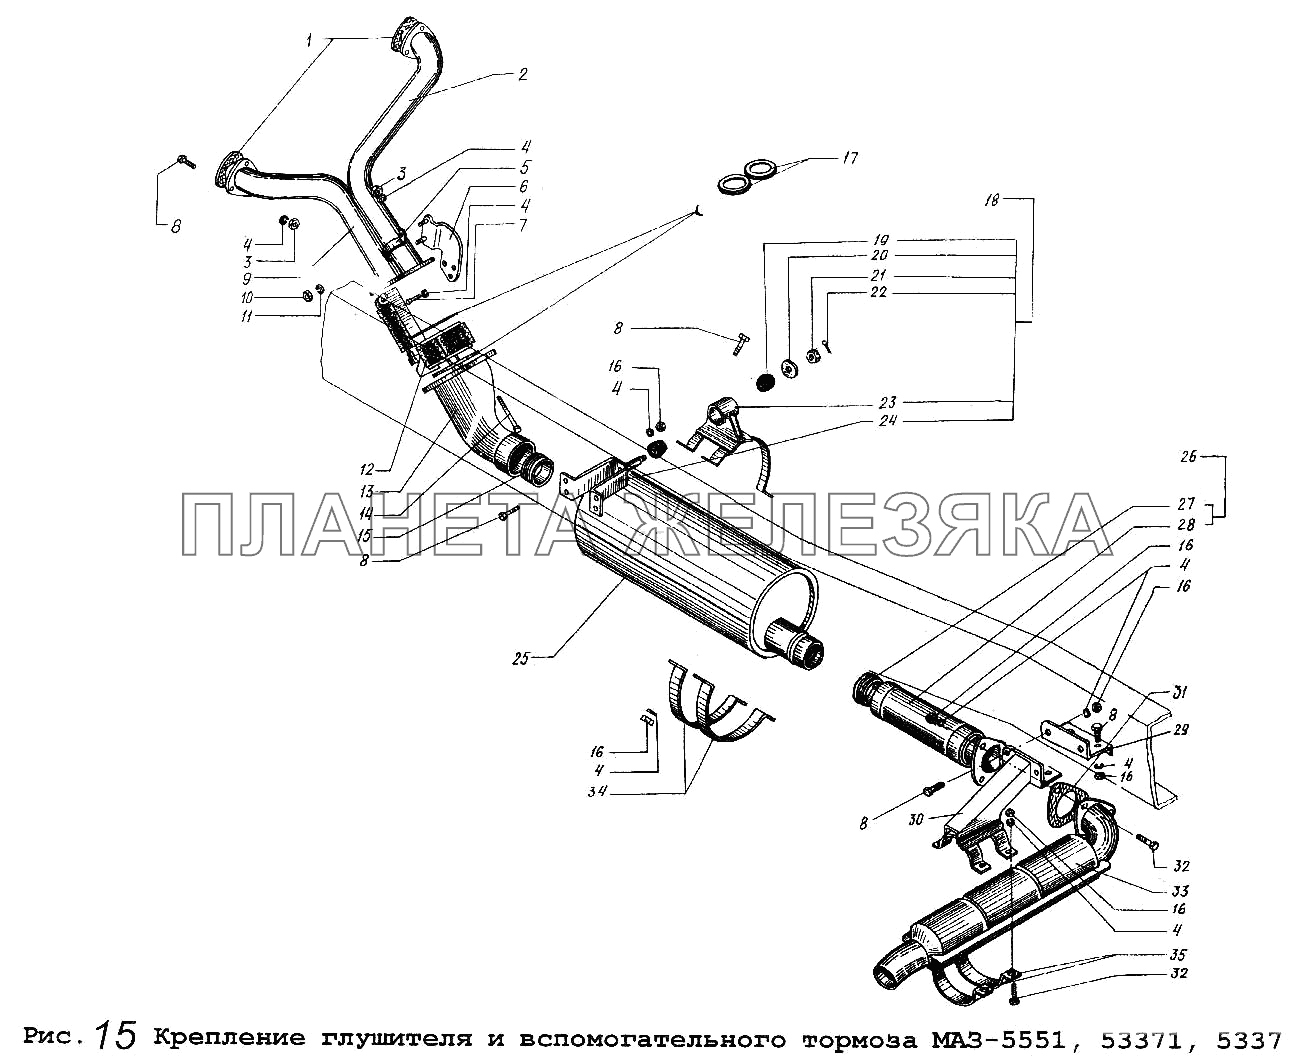 Крепление глушителя и вспомогательного тормоза МАЗ-5551, 53371, 5337 Общий (см. мод-ции)